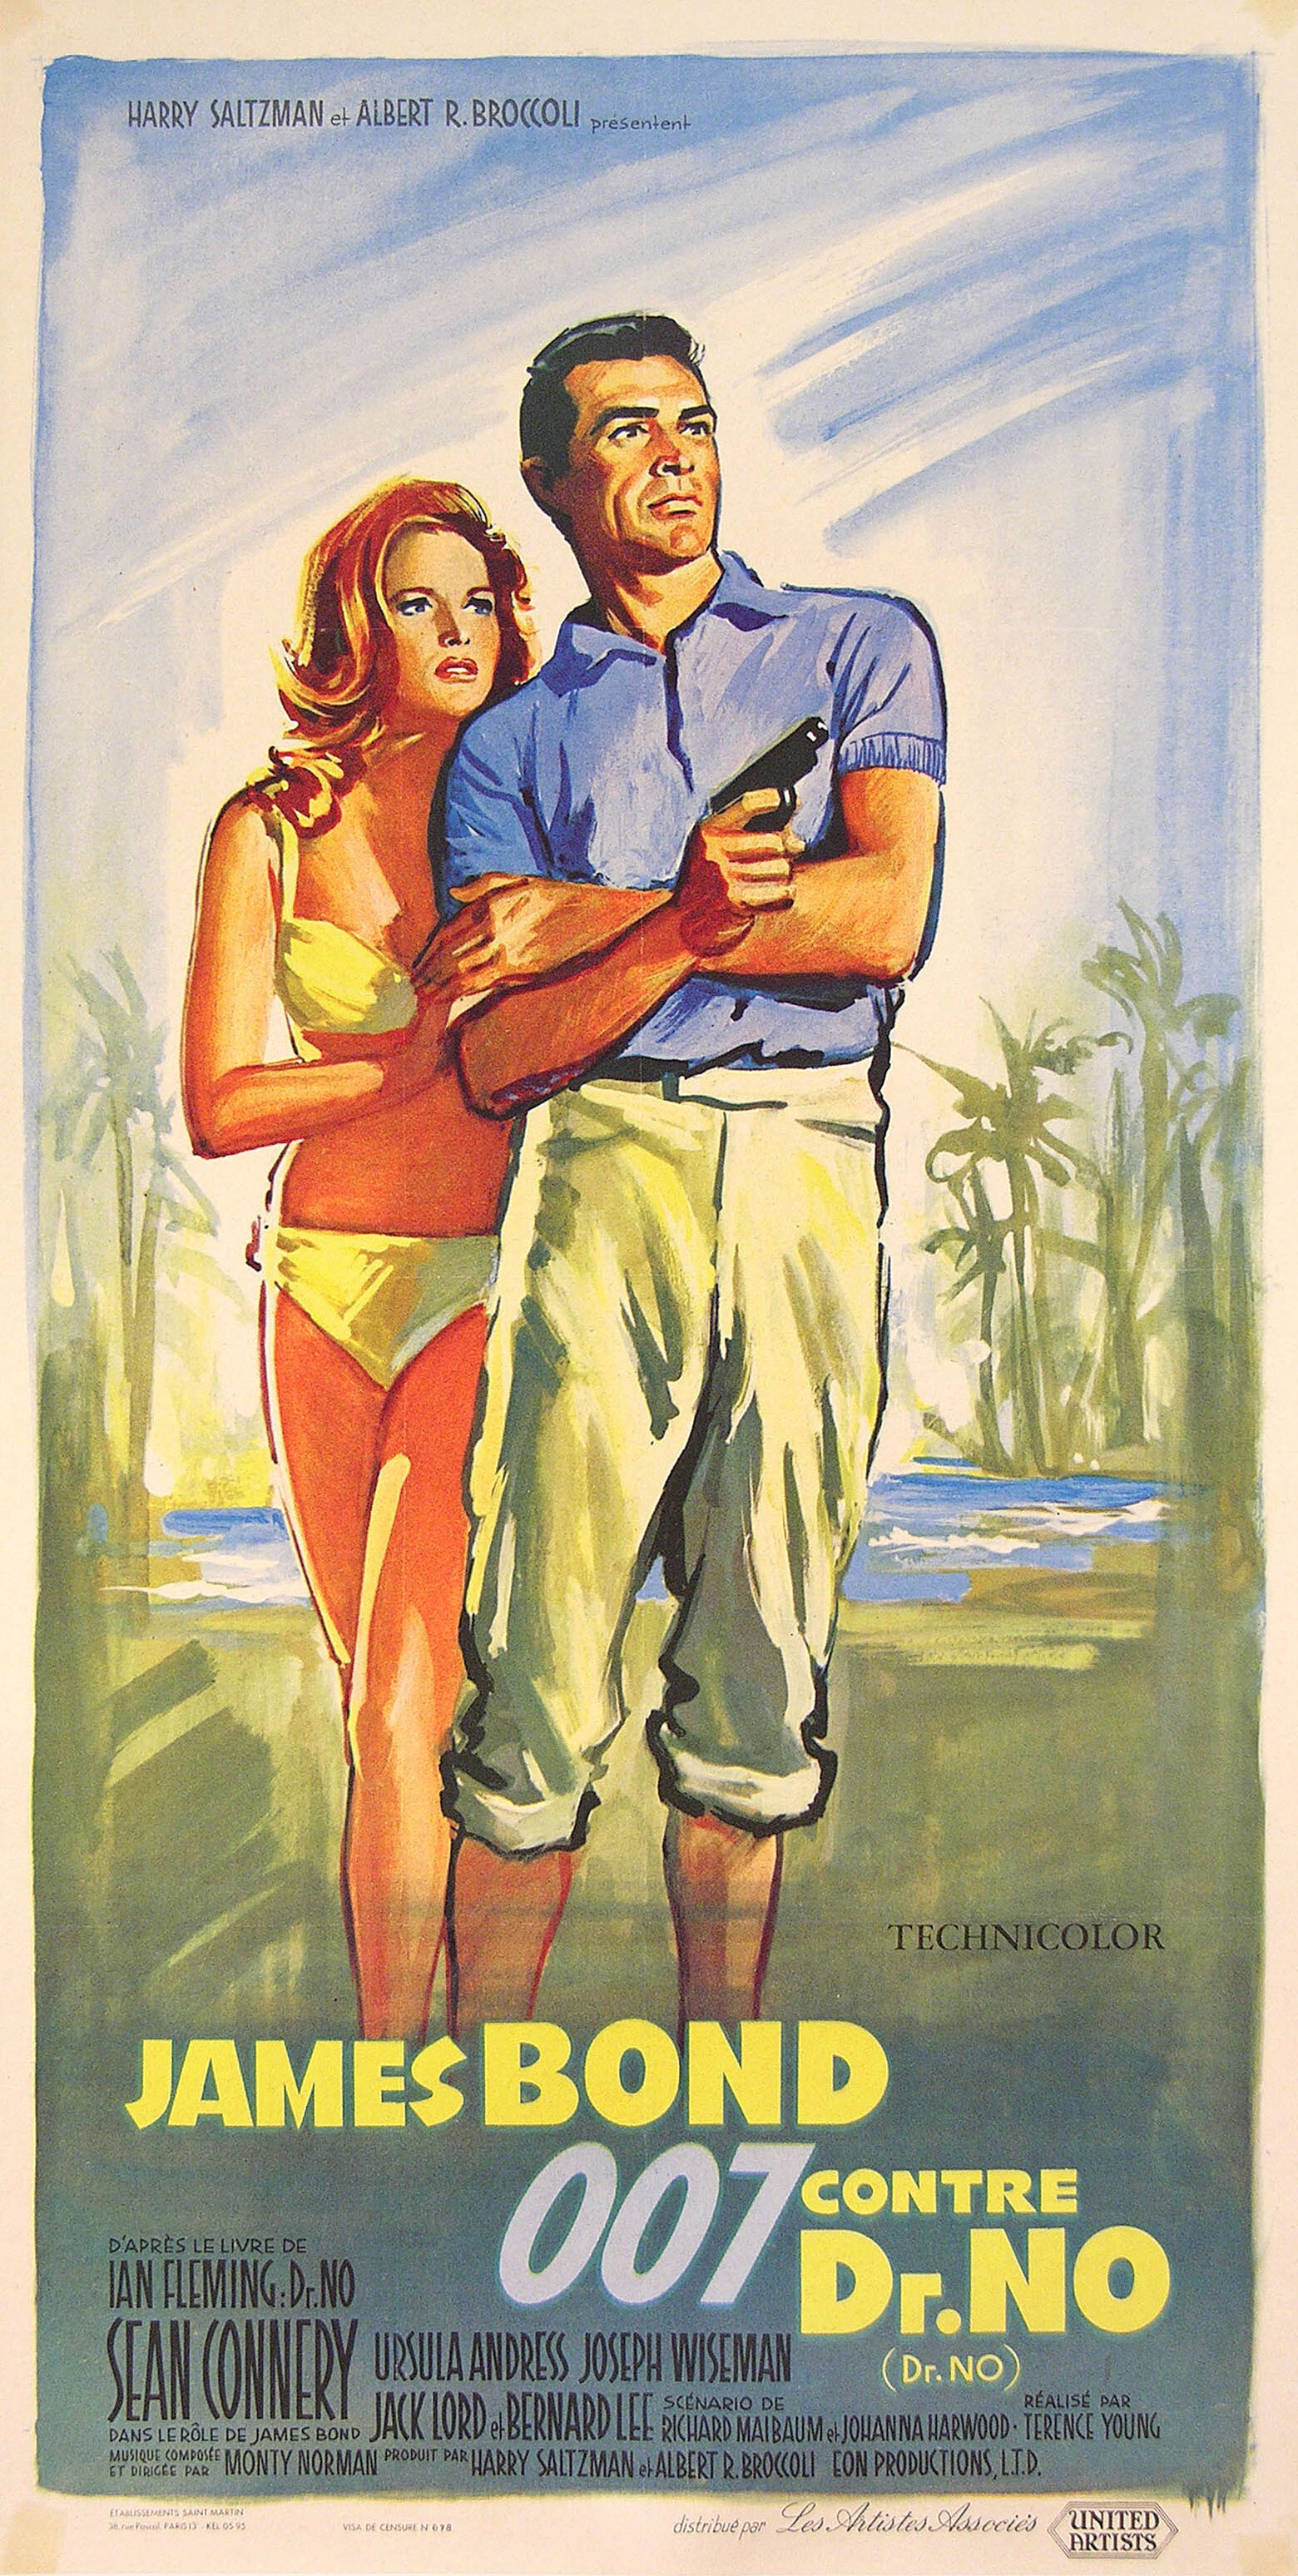 Доктор Ноу (Dr. No, 1962), режиссёр Теренс Янг, художественный постер к фильму (Франция, 1960 год), автор Жан Маски